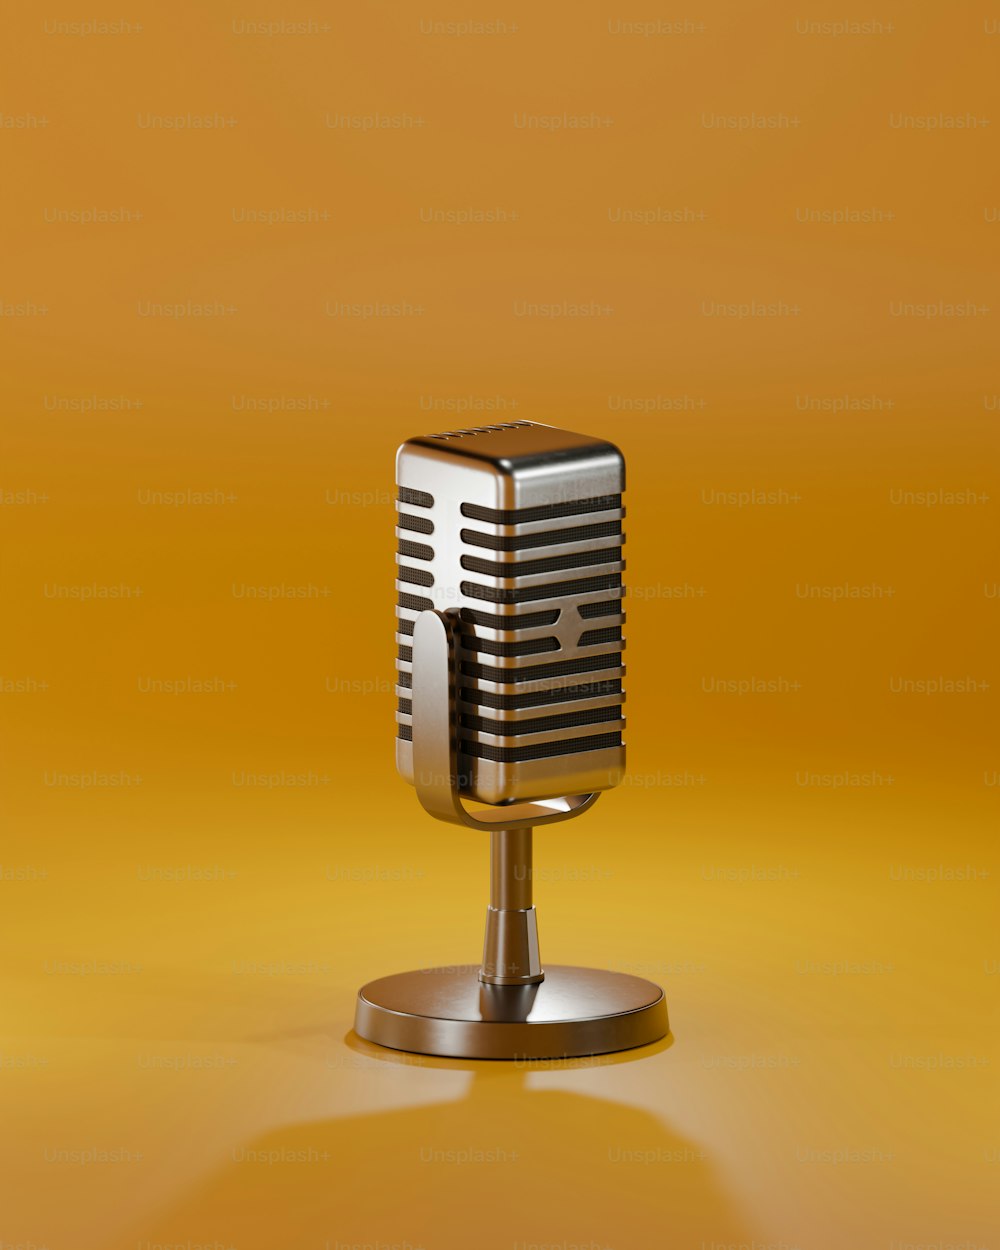 Un micrófono anticuado en un soporte sobre un fondo amarillo